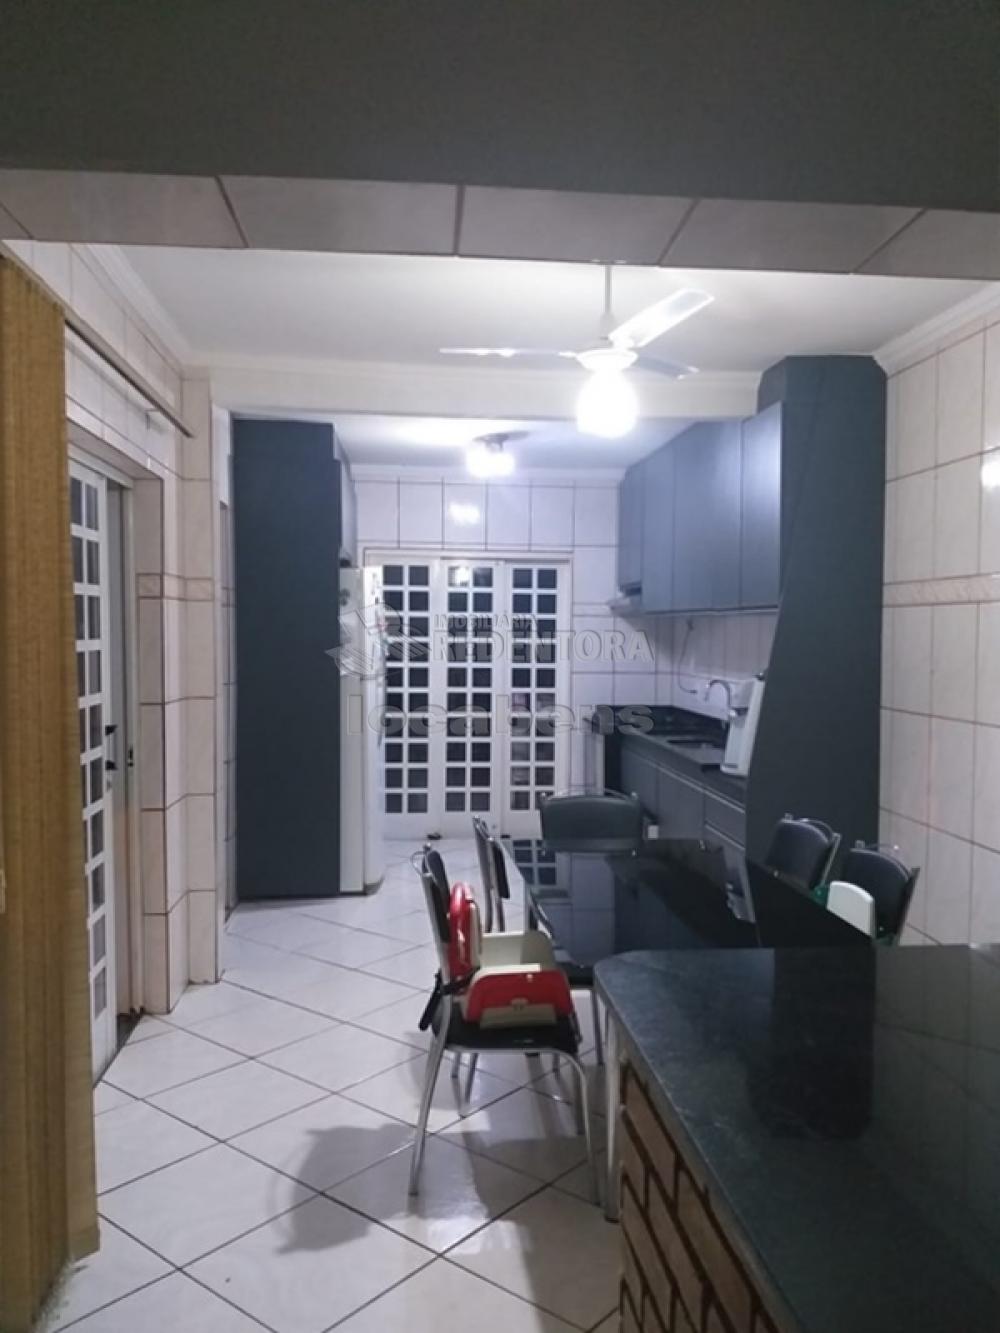 Comprar Casa / Padrão em São José do Rio Preto R$ 590.000,00 - Foto 5